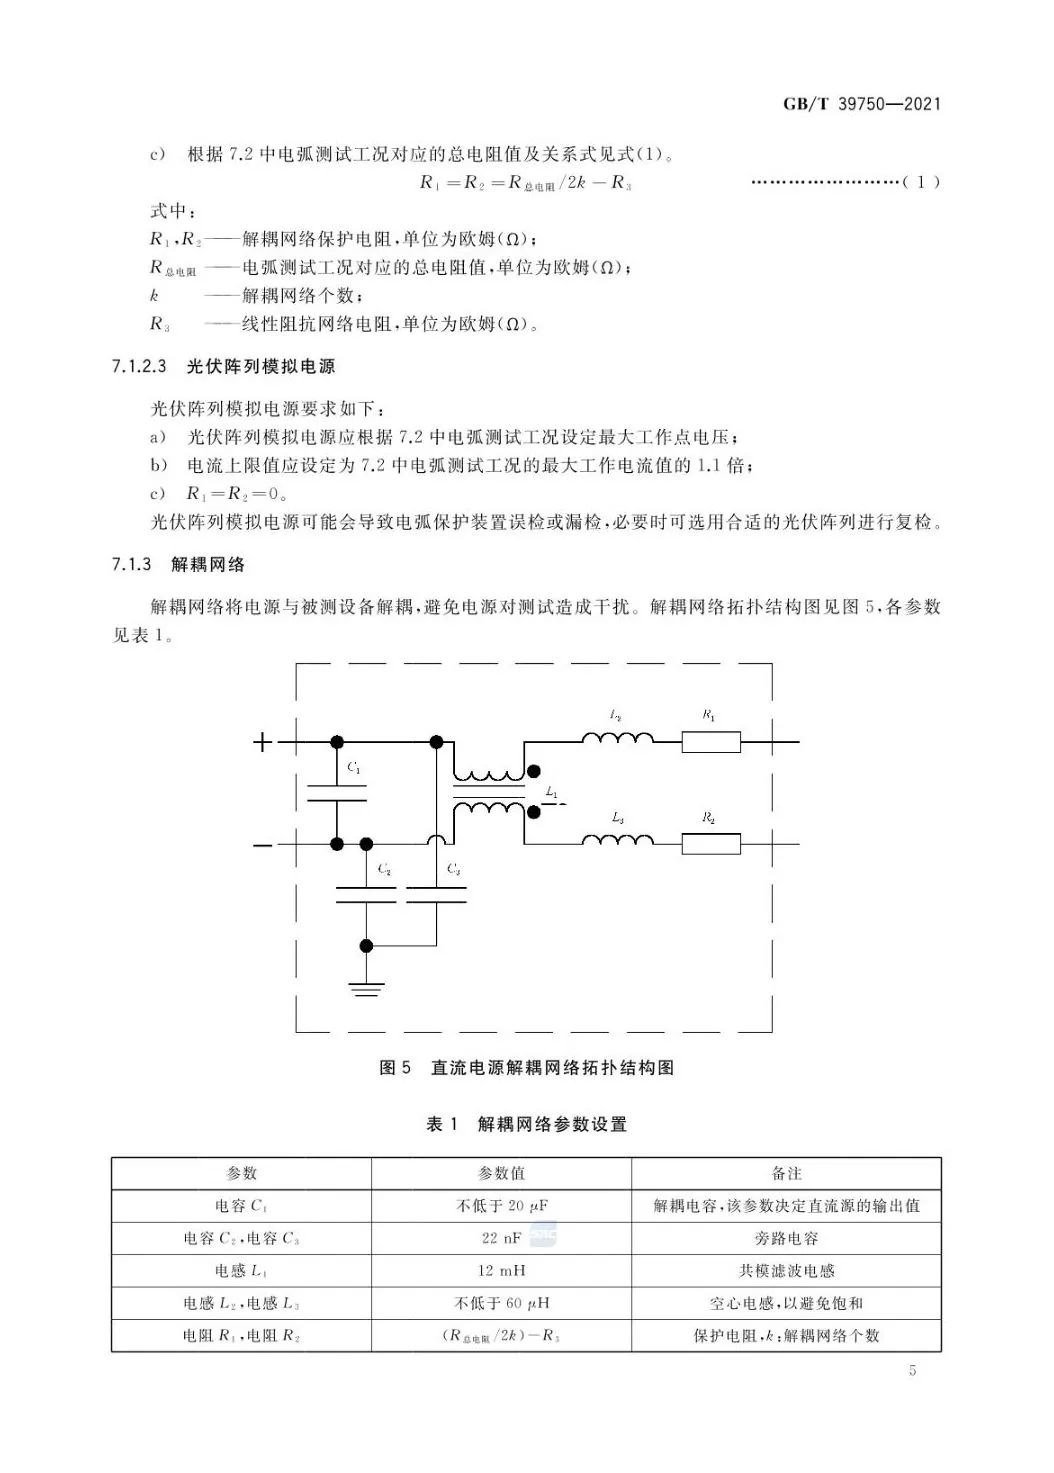 【规范图书馆】光伏发电系统直流电弧保护技术要求GB/T 39750-2021